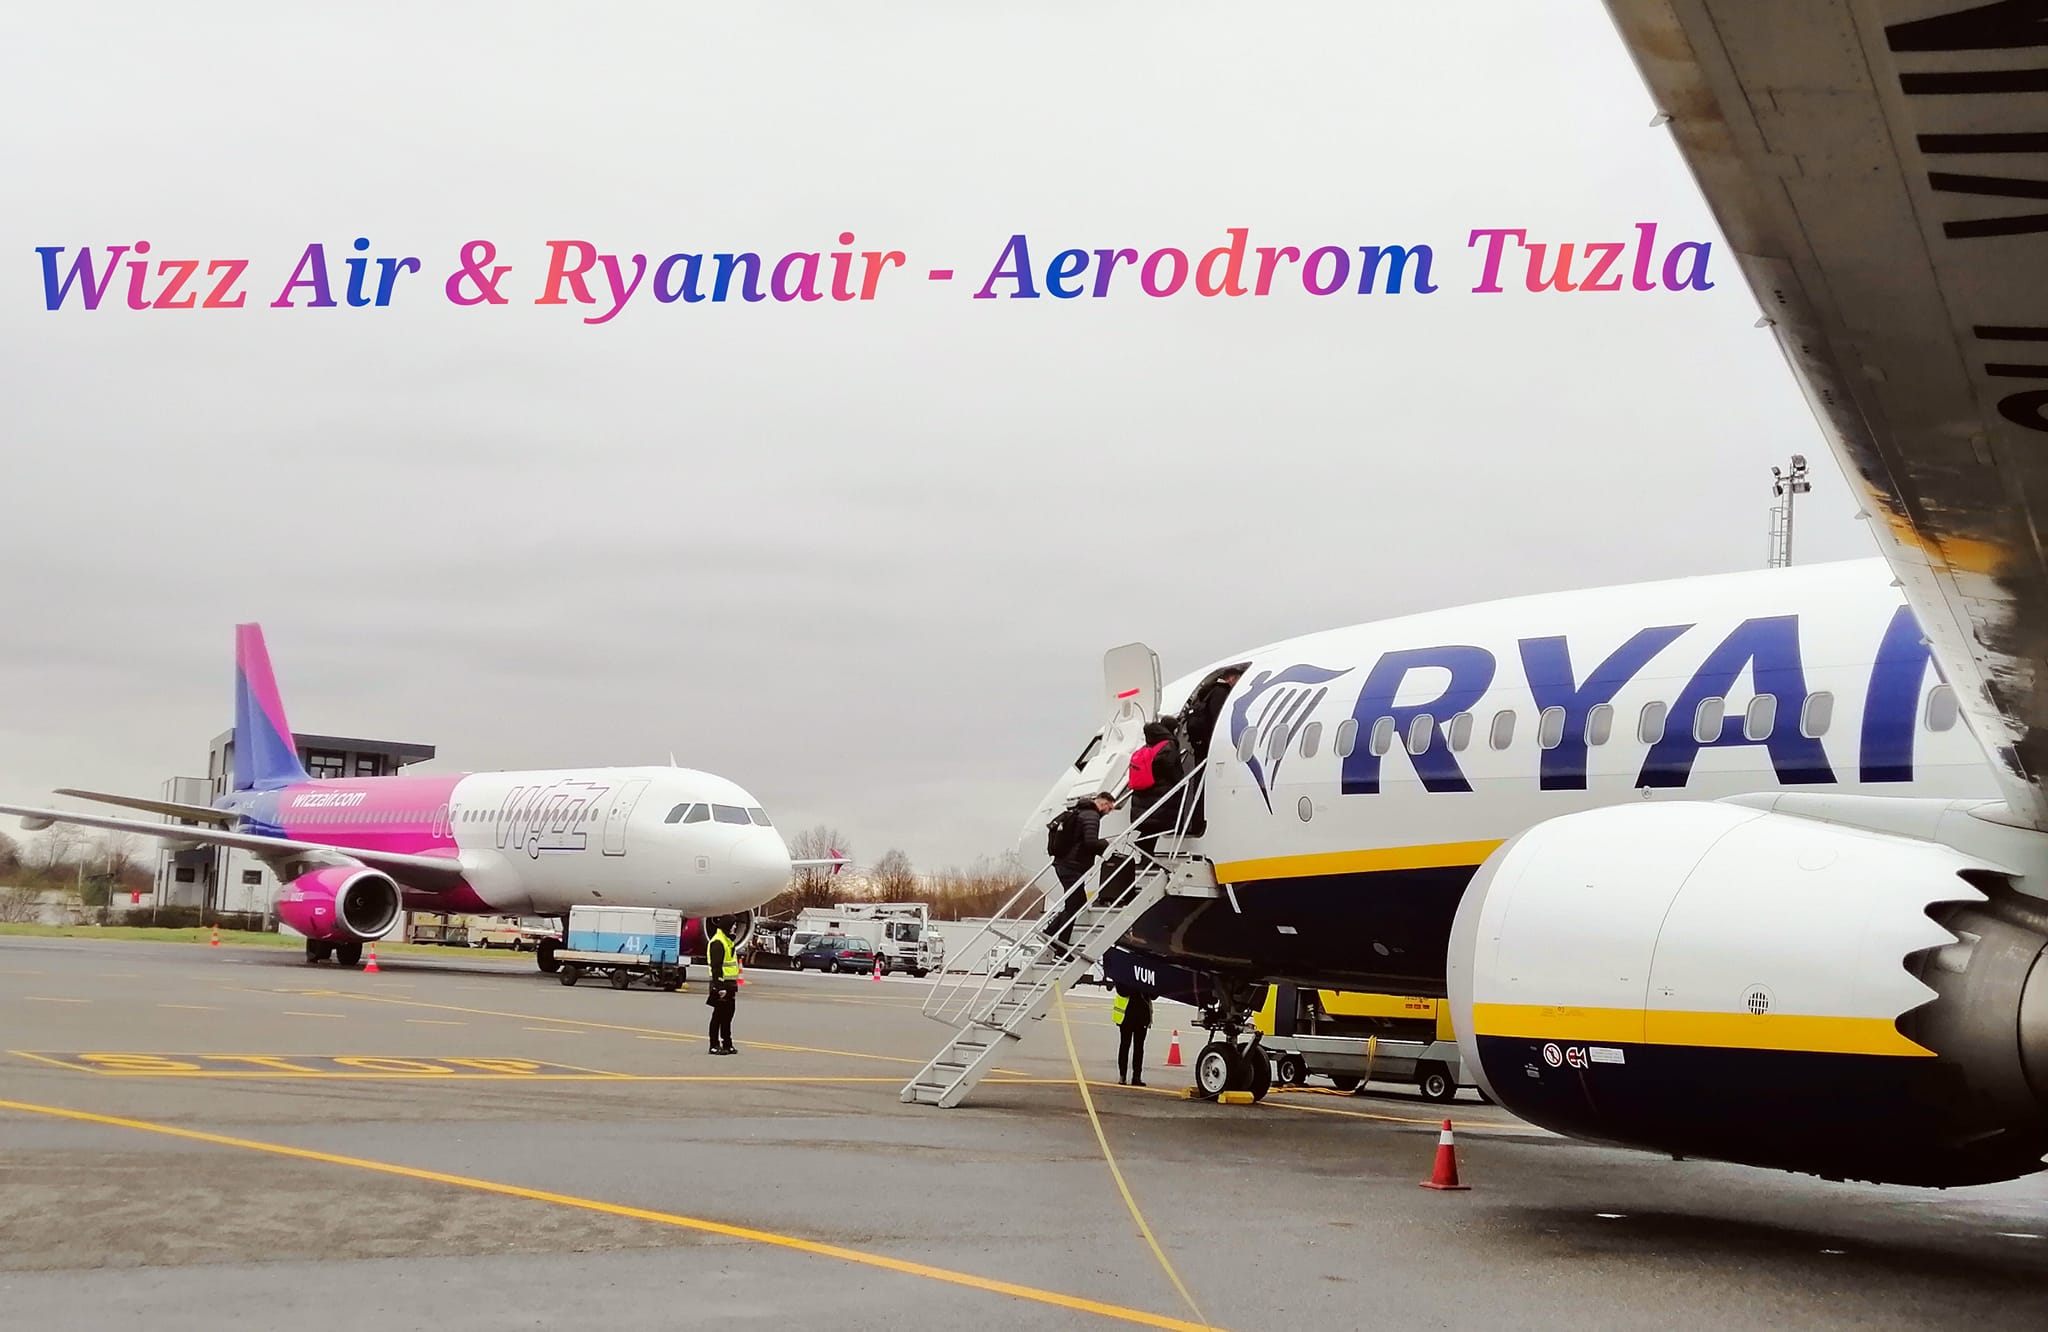 Ukinuta taksa od 3 KM na bh. aerodromima: Ryanair se vraća u Tuzlu?